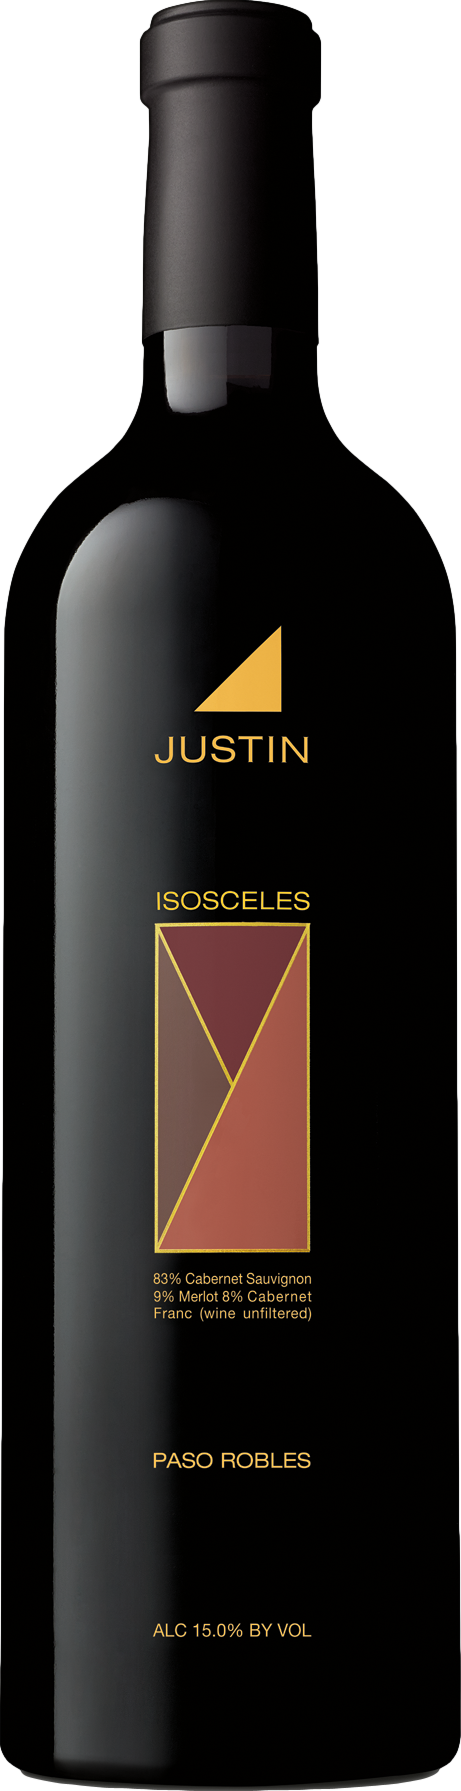 Justin Isosceles 2018